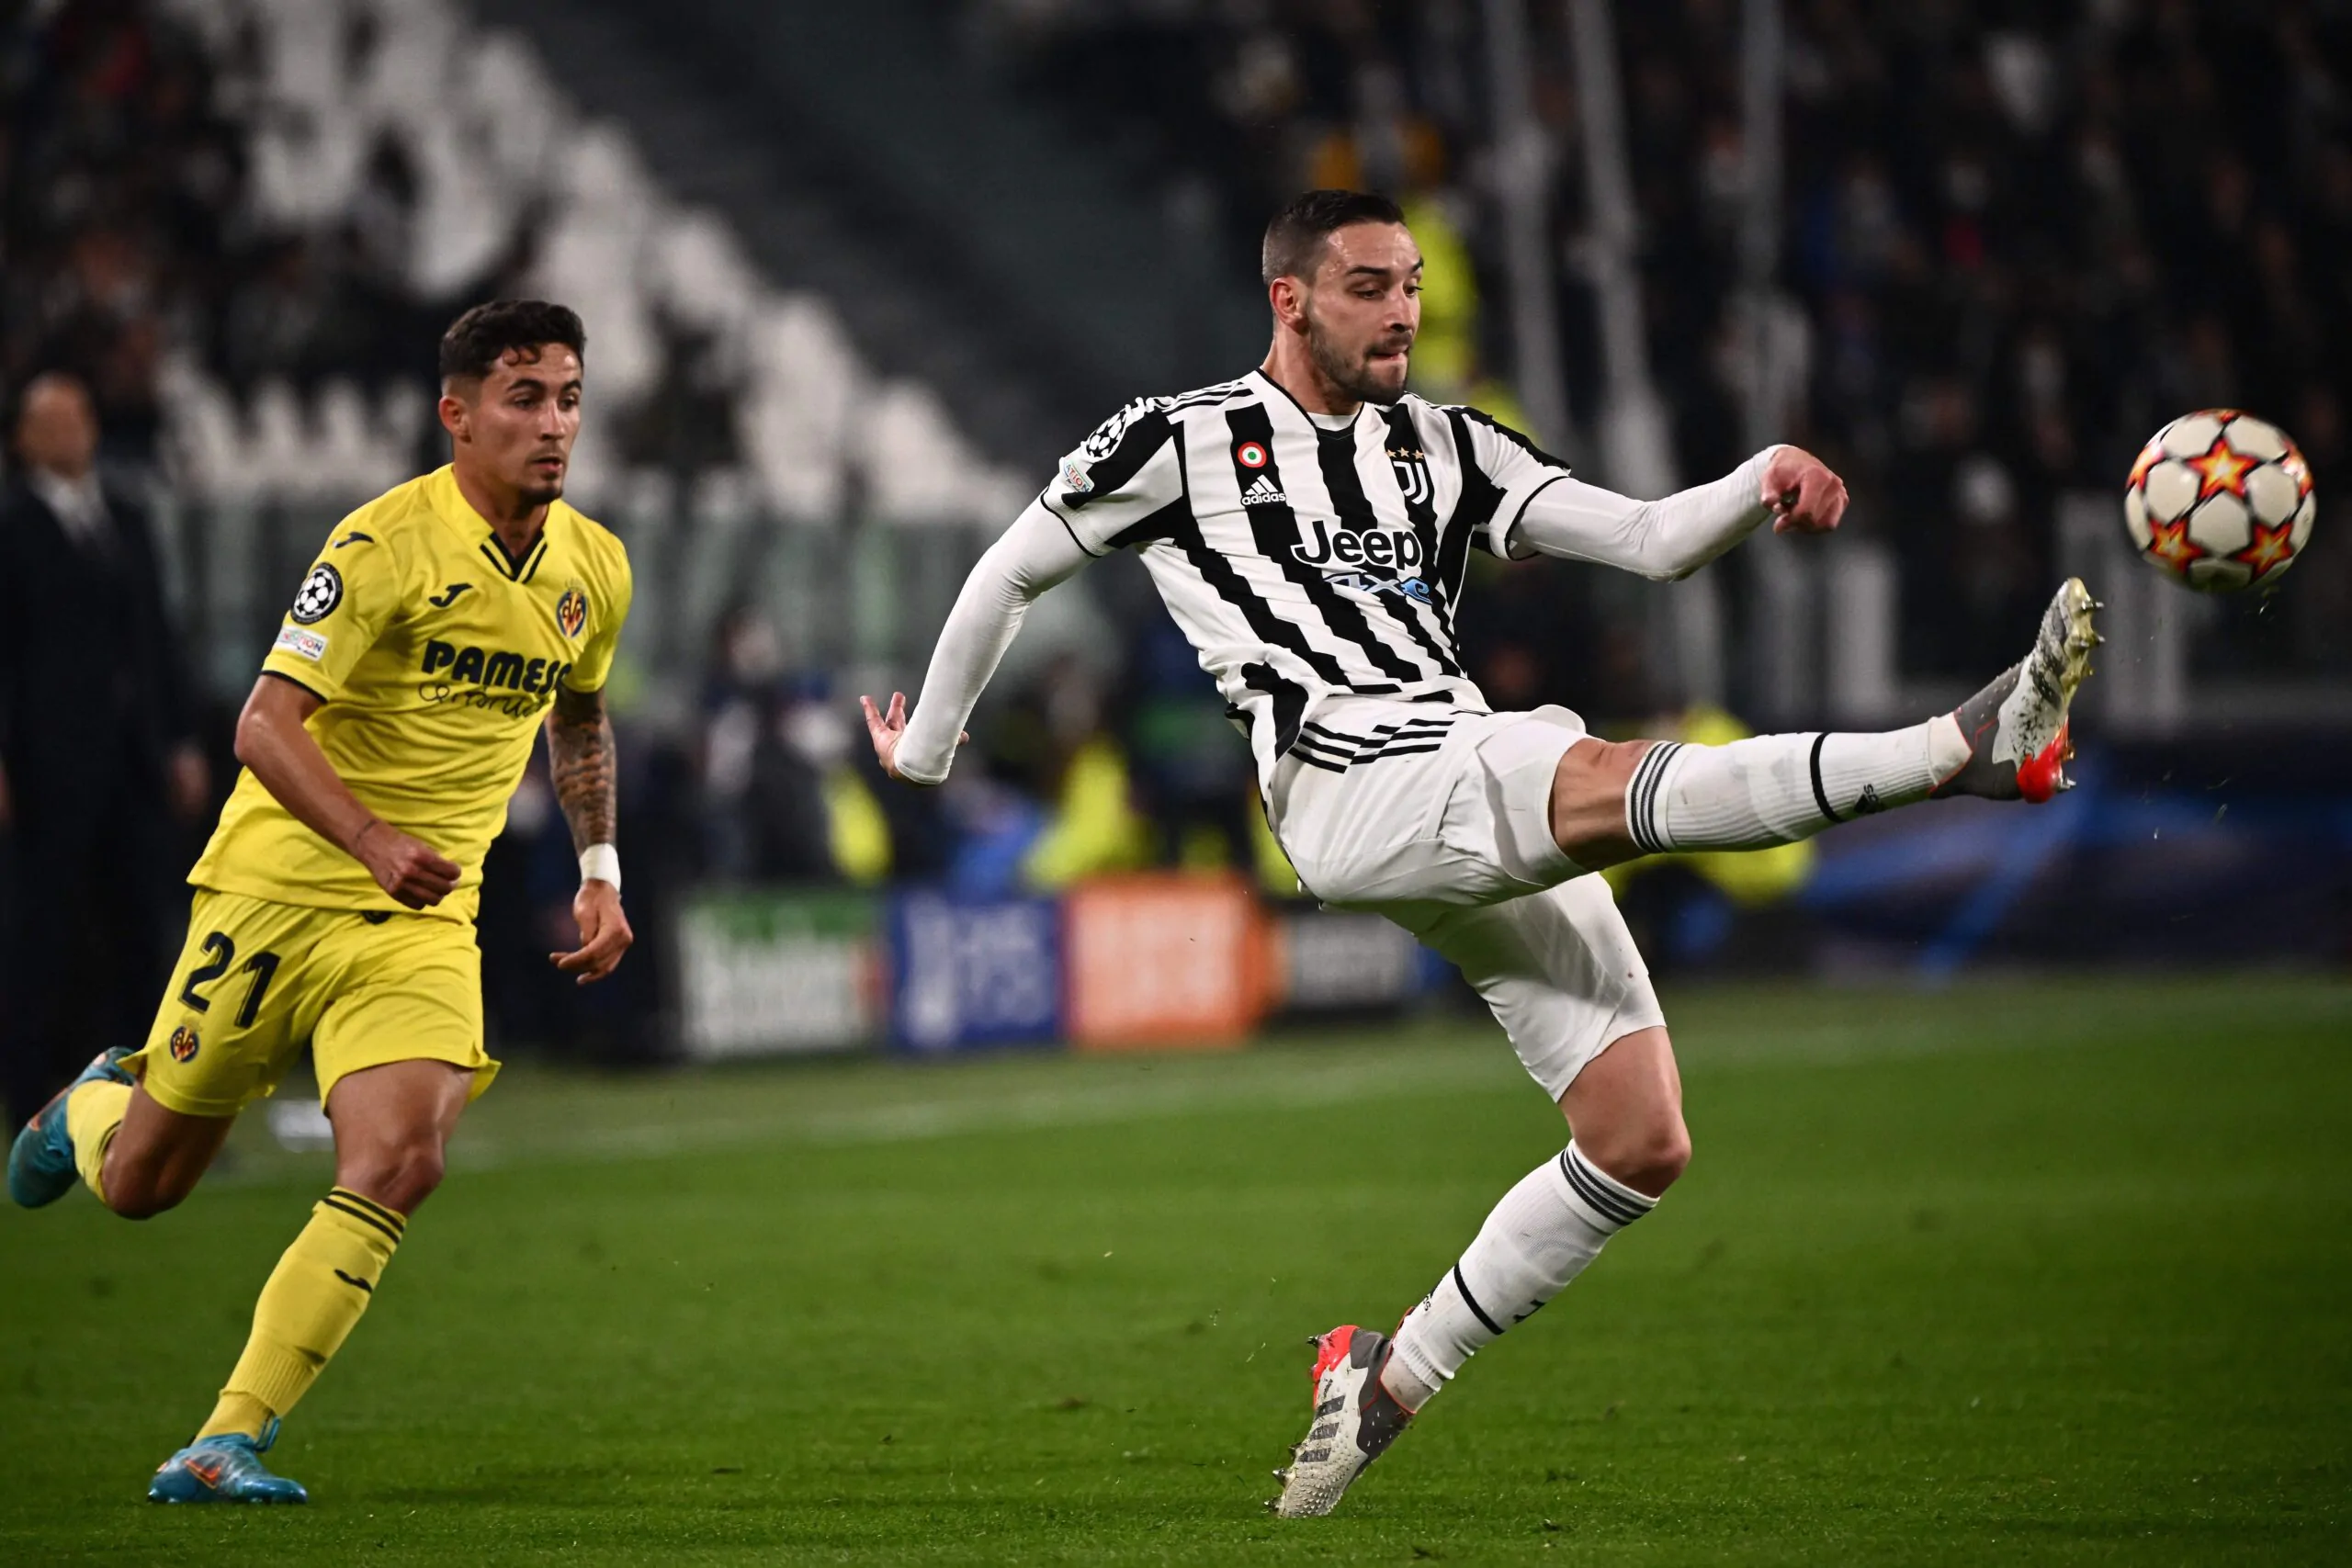 De Sciglio critico sulla stagione della Juventus: “È stata una delusione”